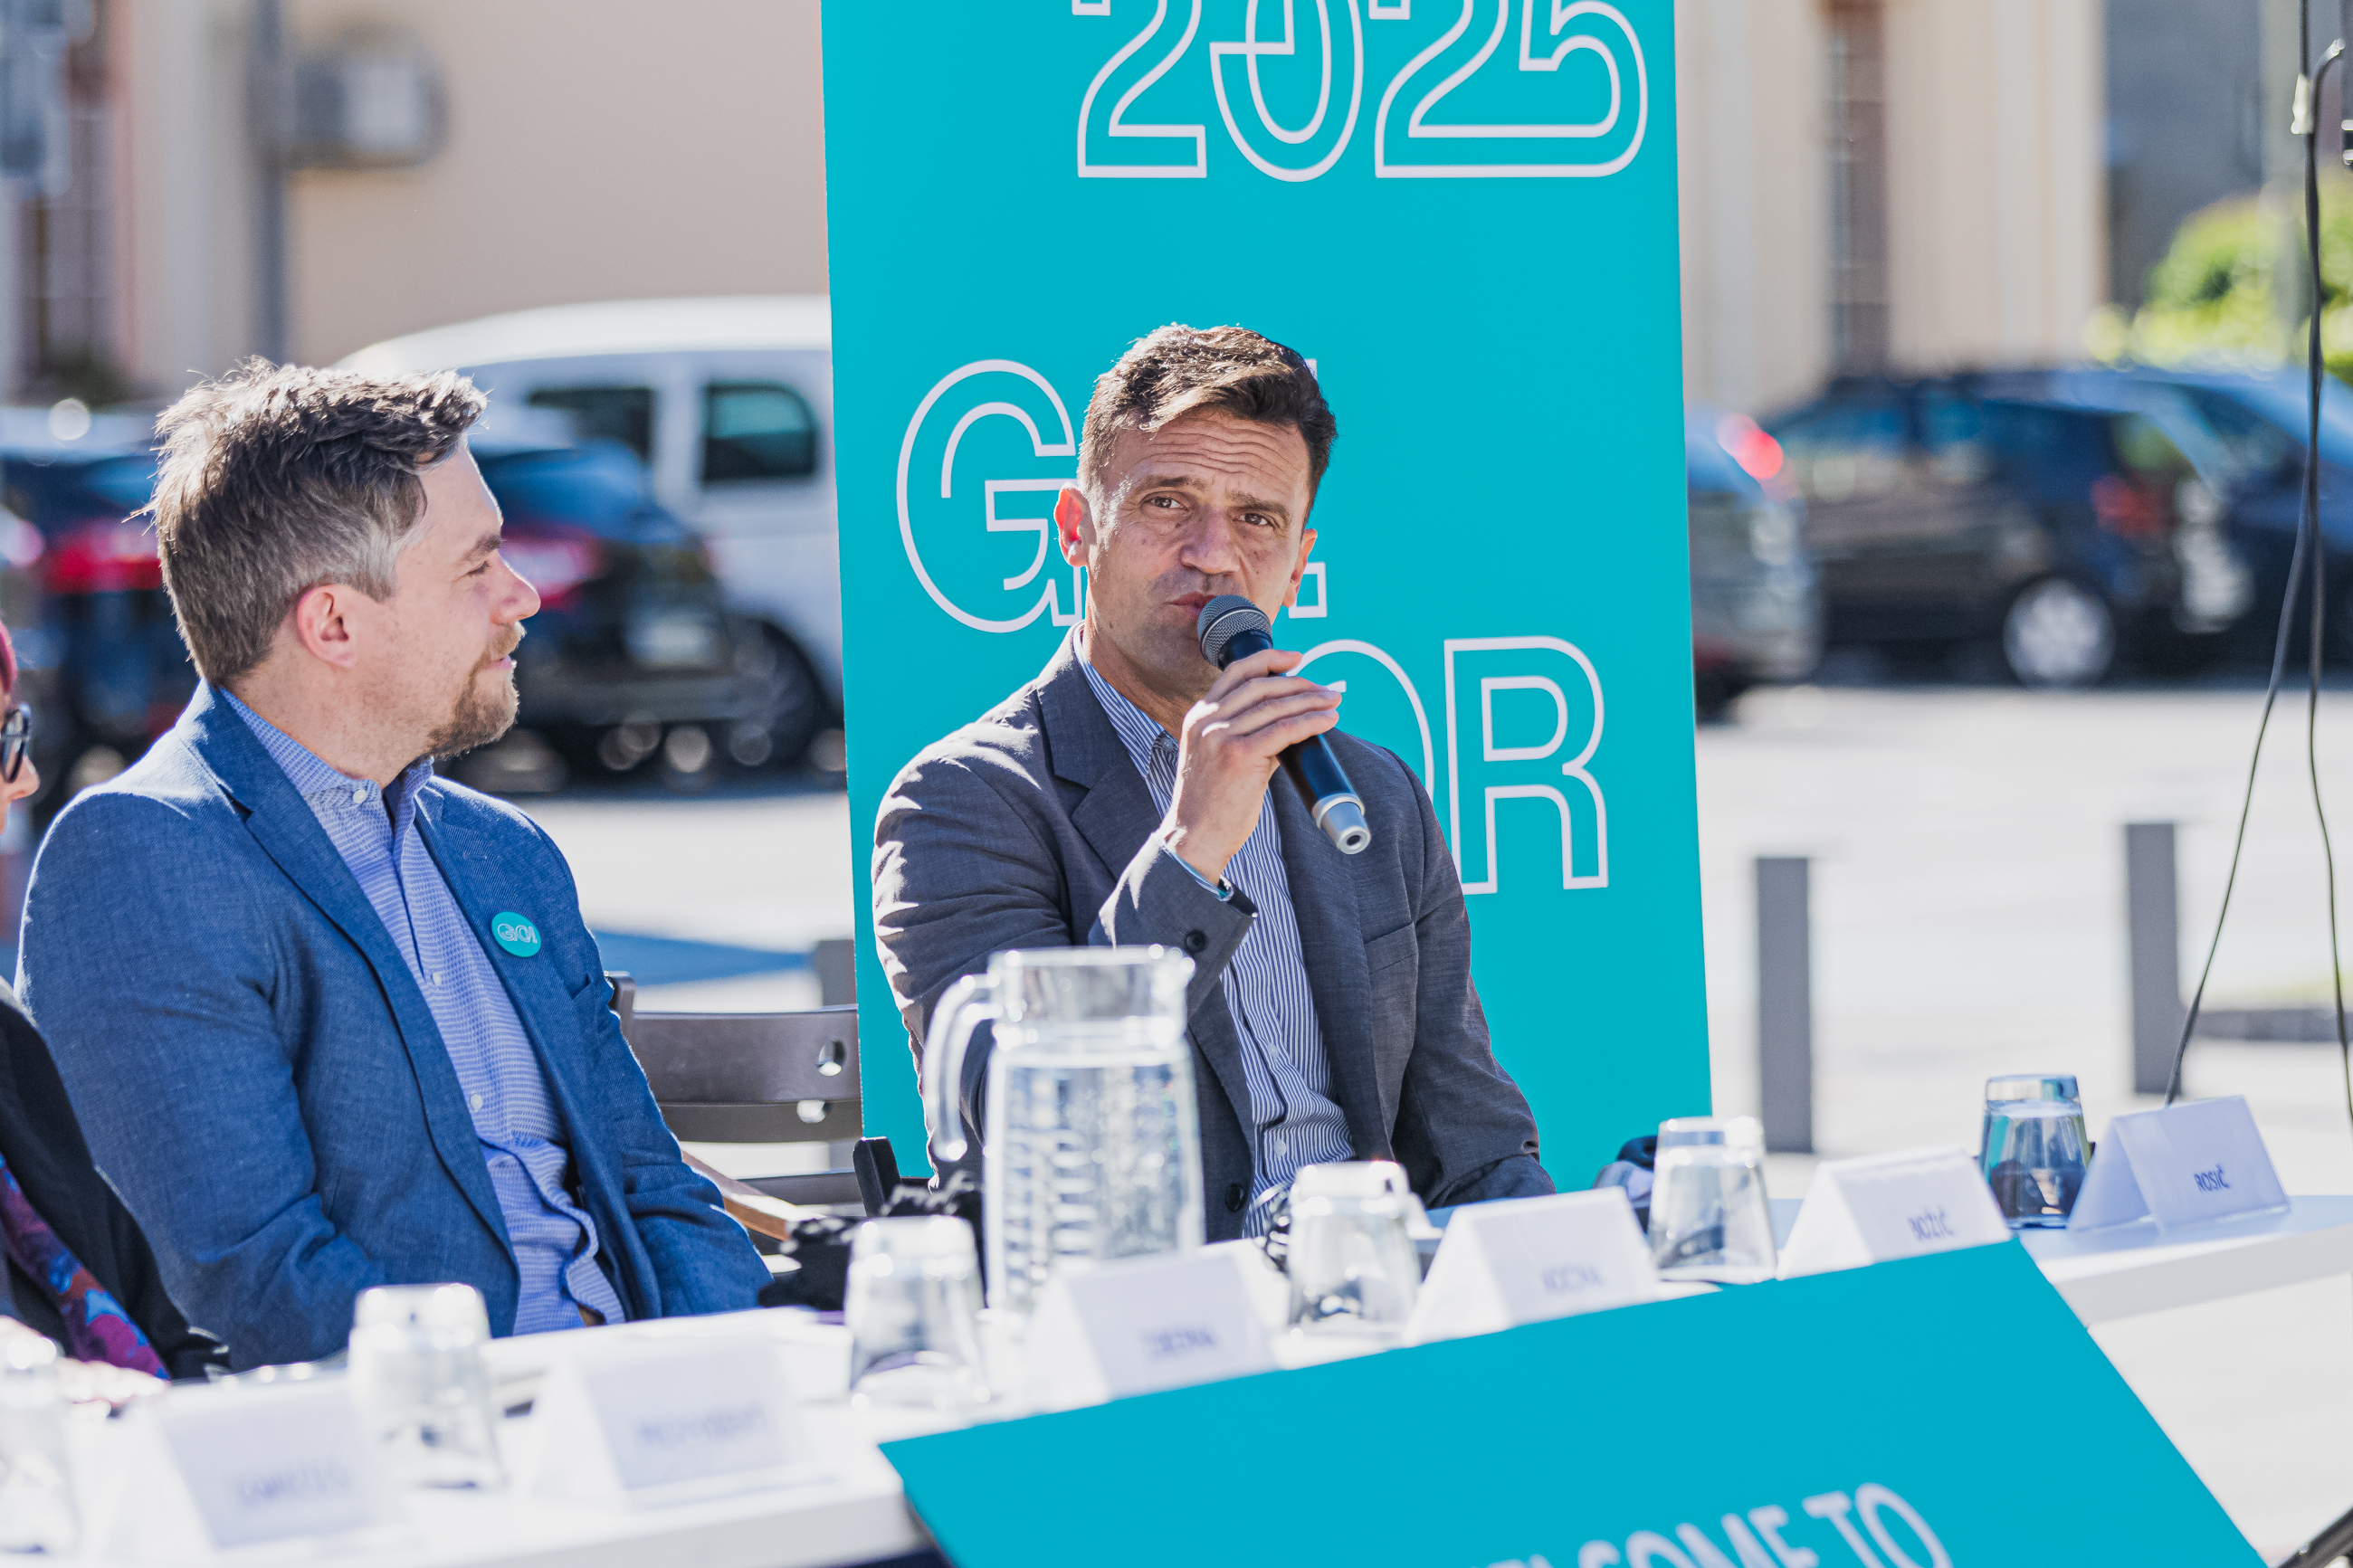 Direktor Zavoda GO! 2025 in podžupan Simon Rosič pri mizi med novinarsko konferenco